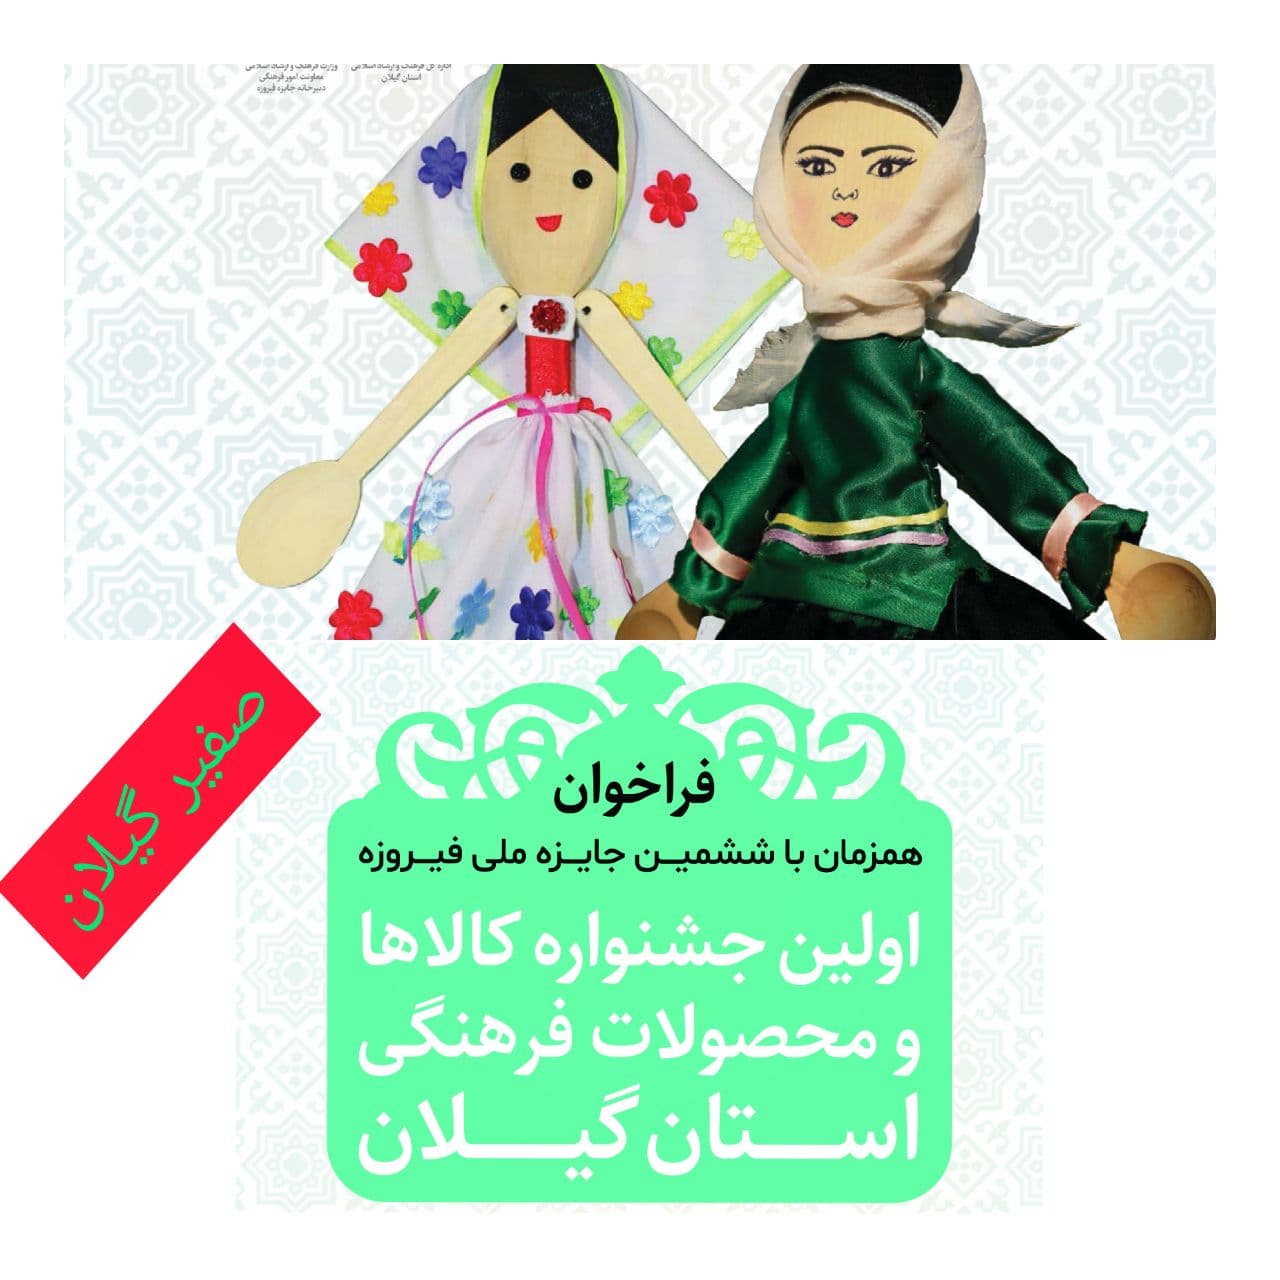 فراخوان اولین جشنواره کالاها و محصولات فرهنگی استان گیلان ( فیروزه) منتشر شد